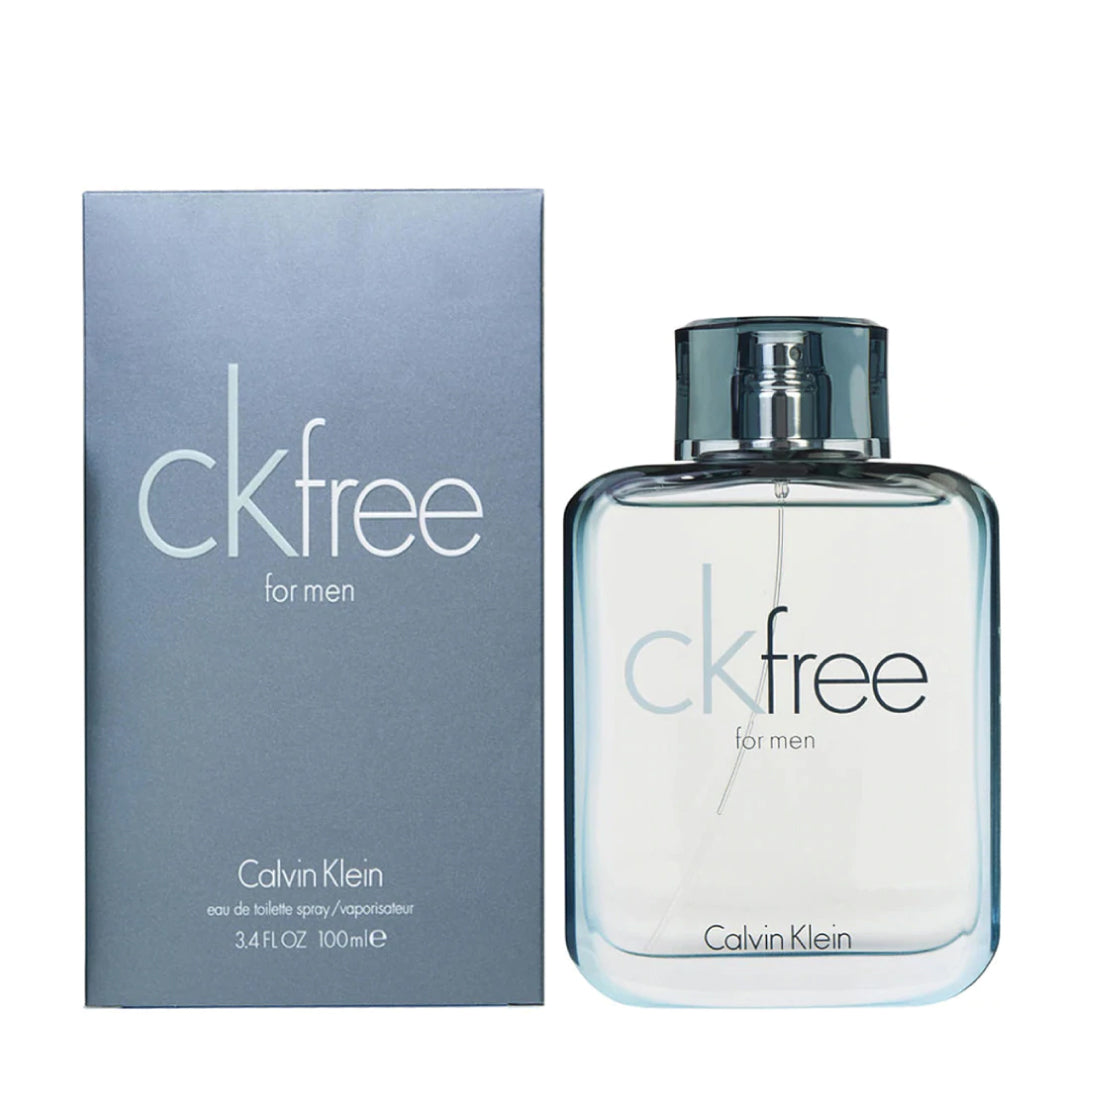 Calvin Klein CK Be Unisex Eau de Toilette Spray - 3.4 fl oz bottle